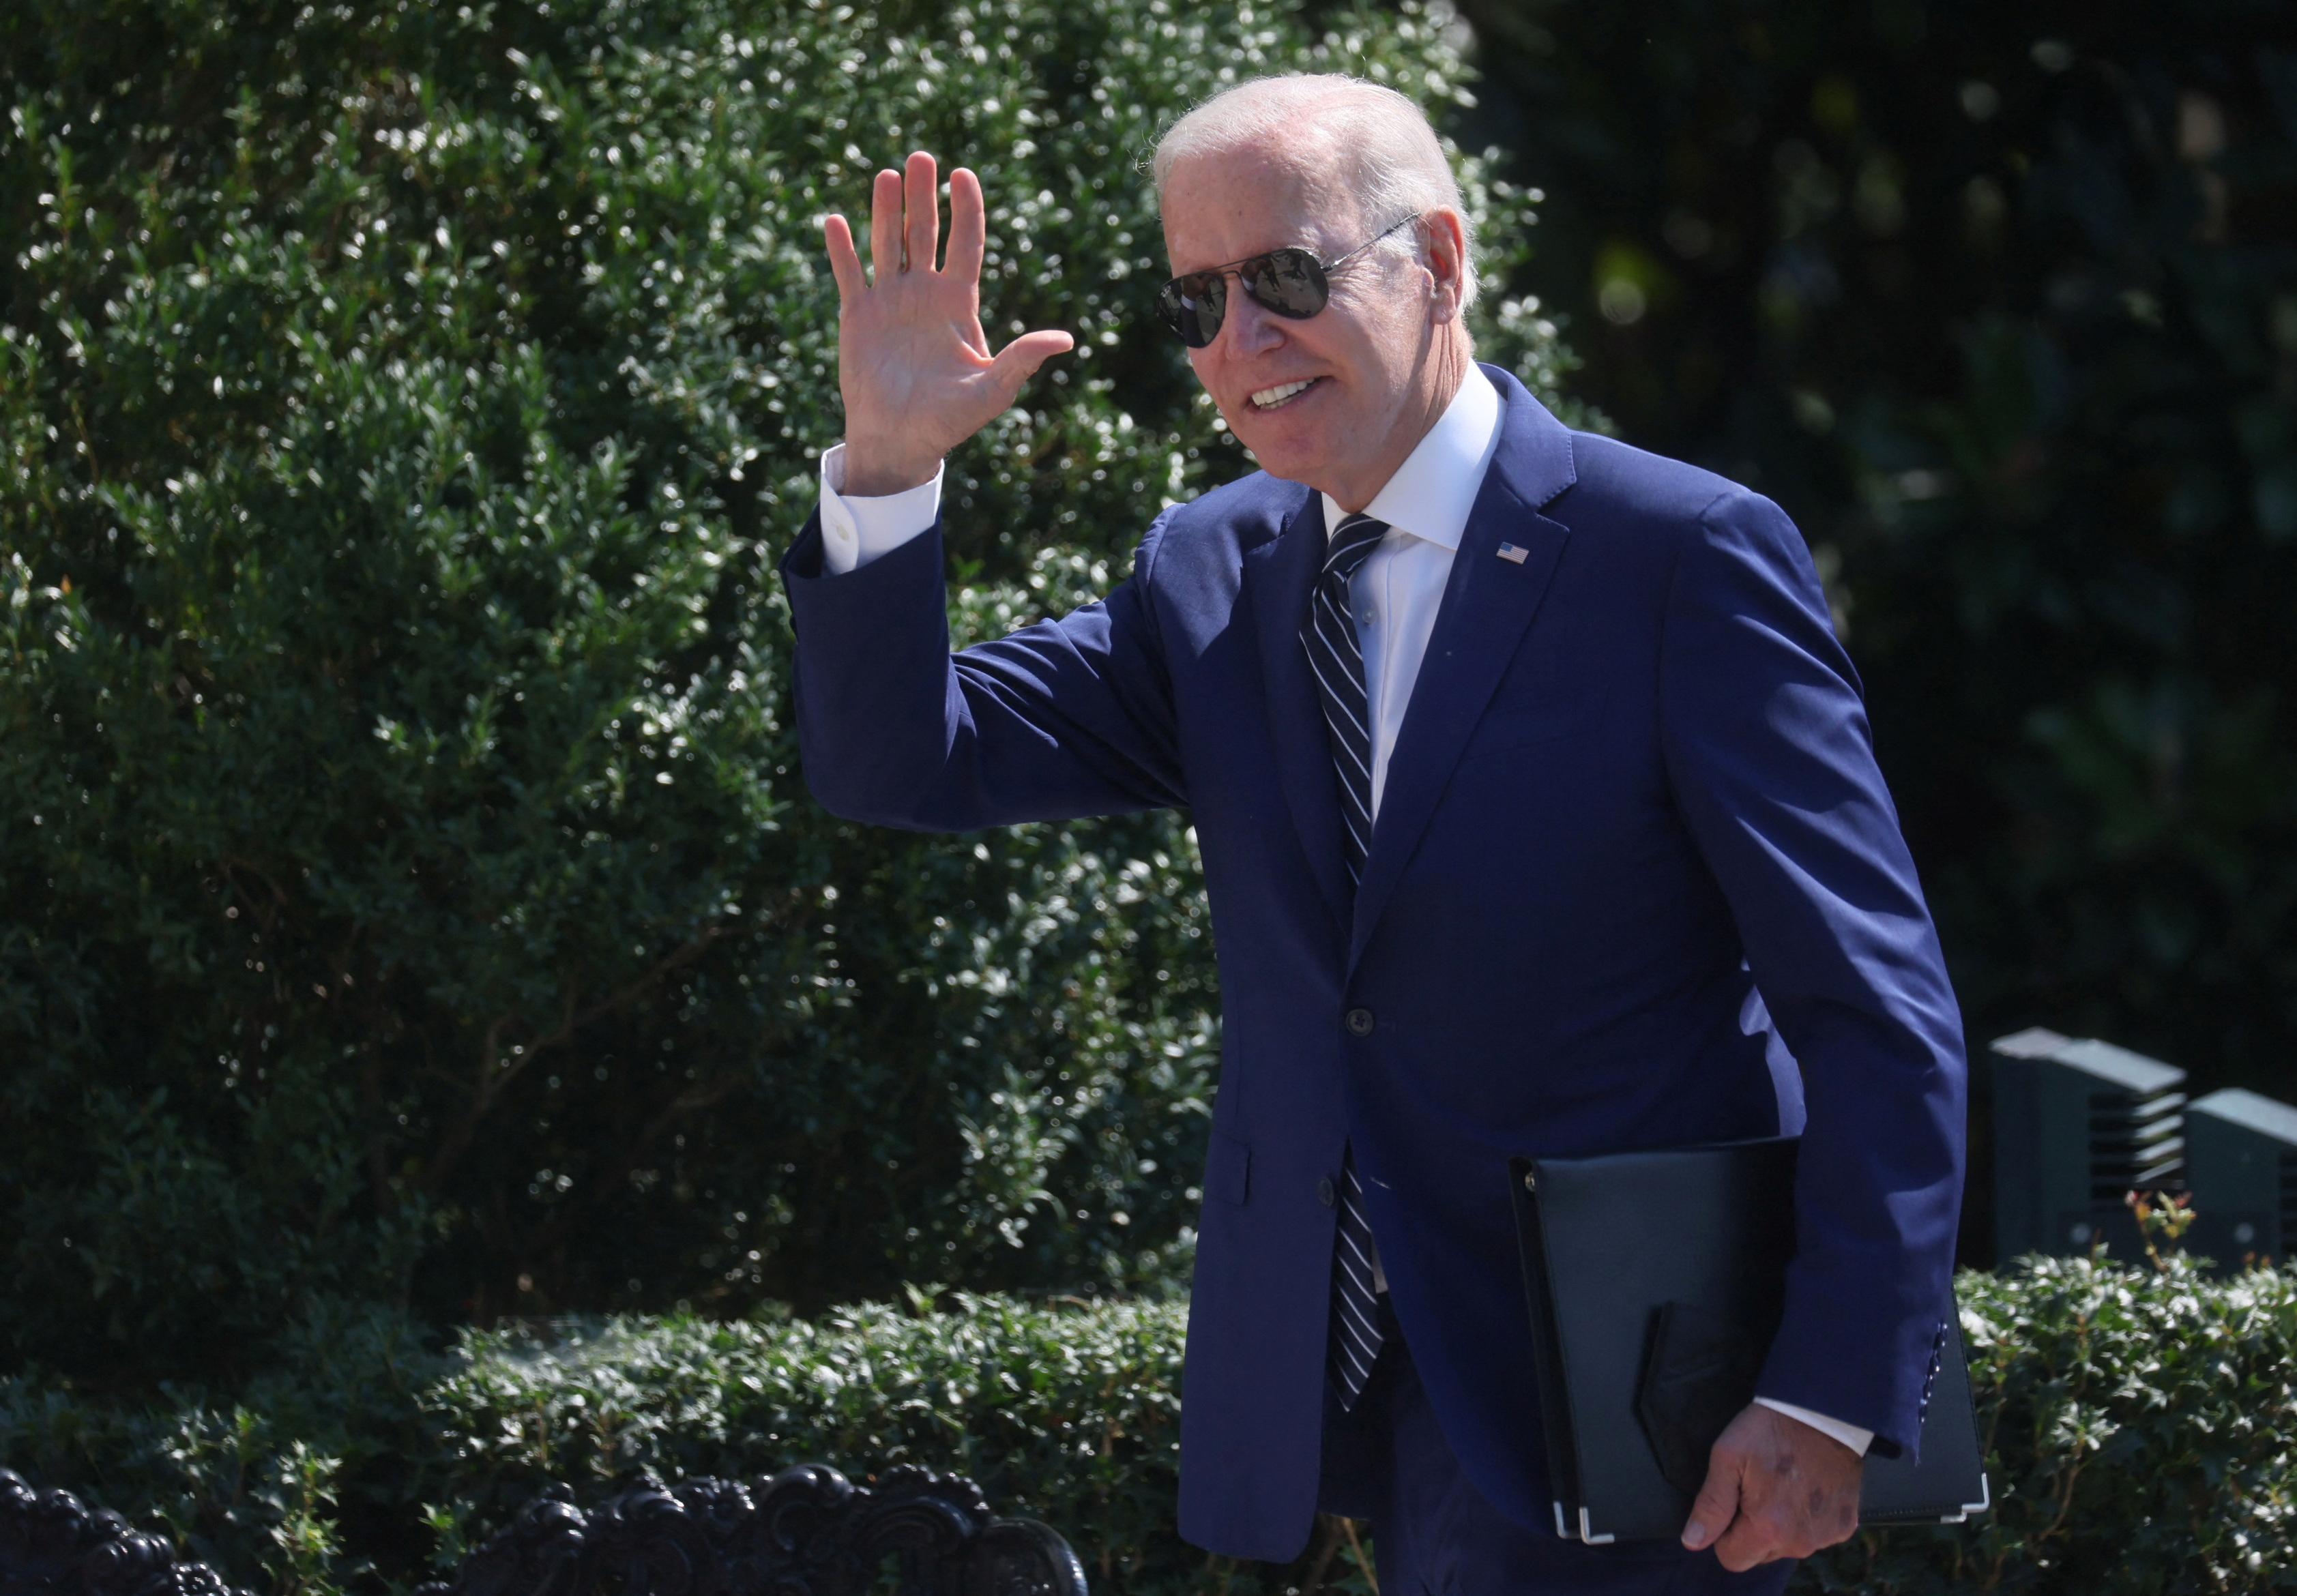 U.S. President Joe Biden arrives at the White House